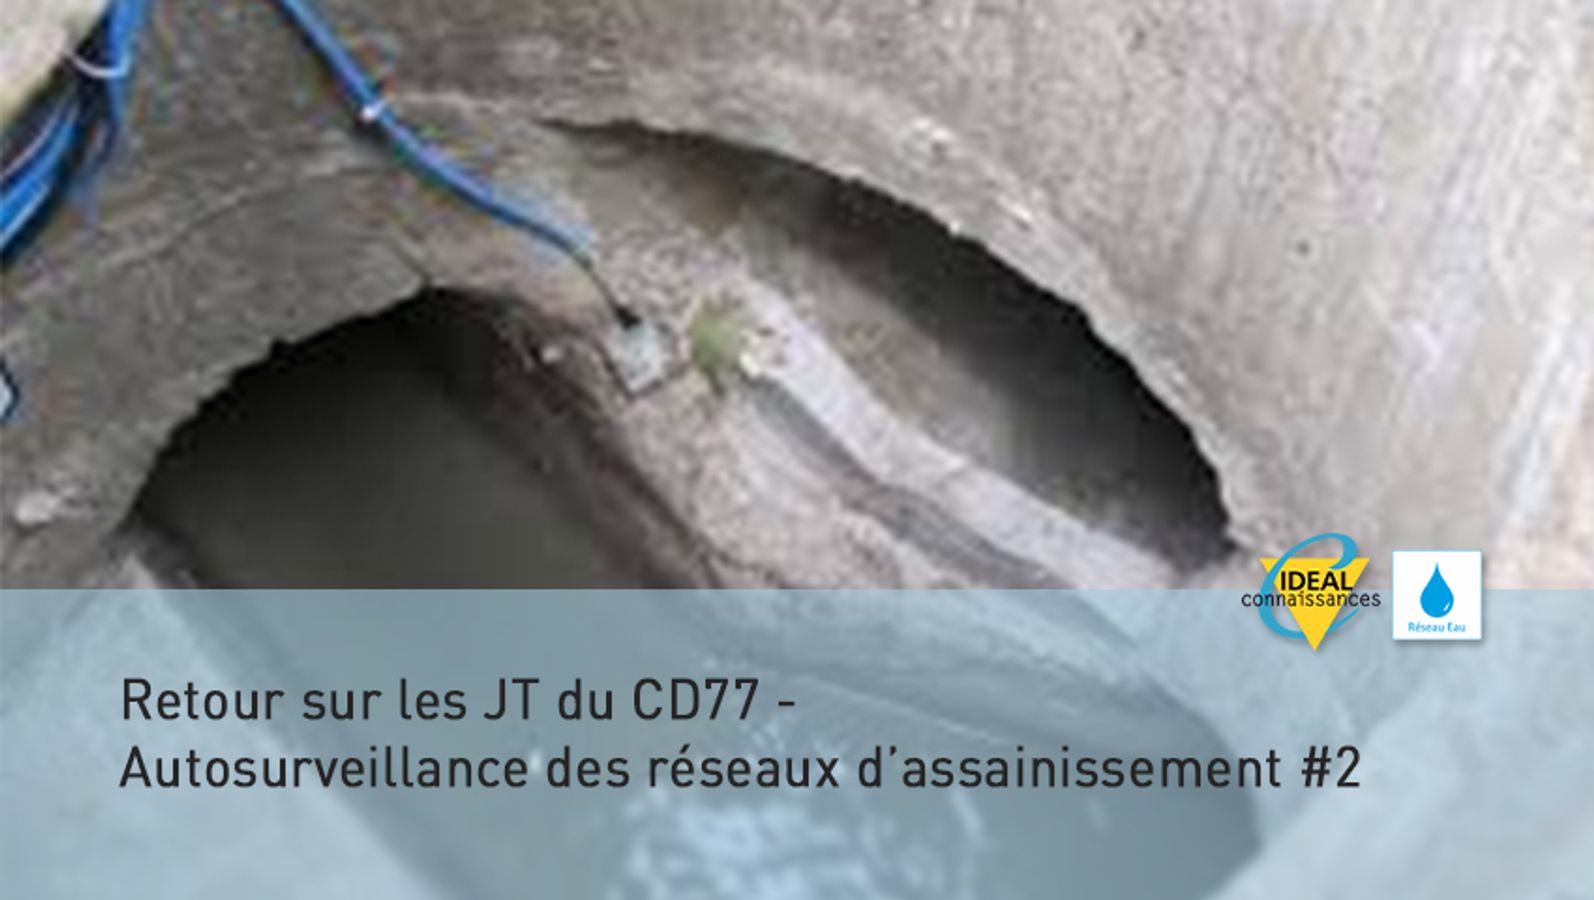 Retour sur les JT du CD77 – Autosurveillance des réseaux d’assainissement #2